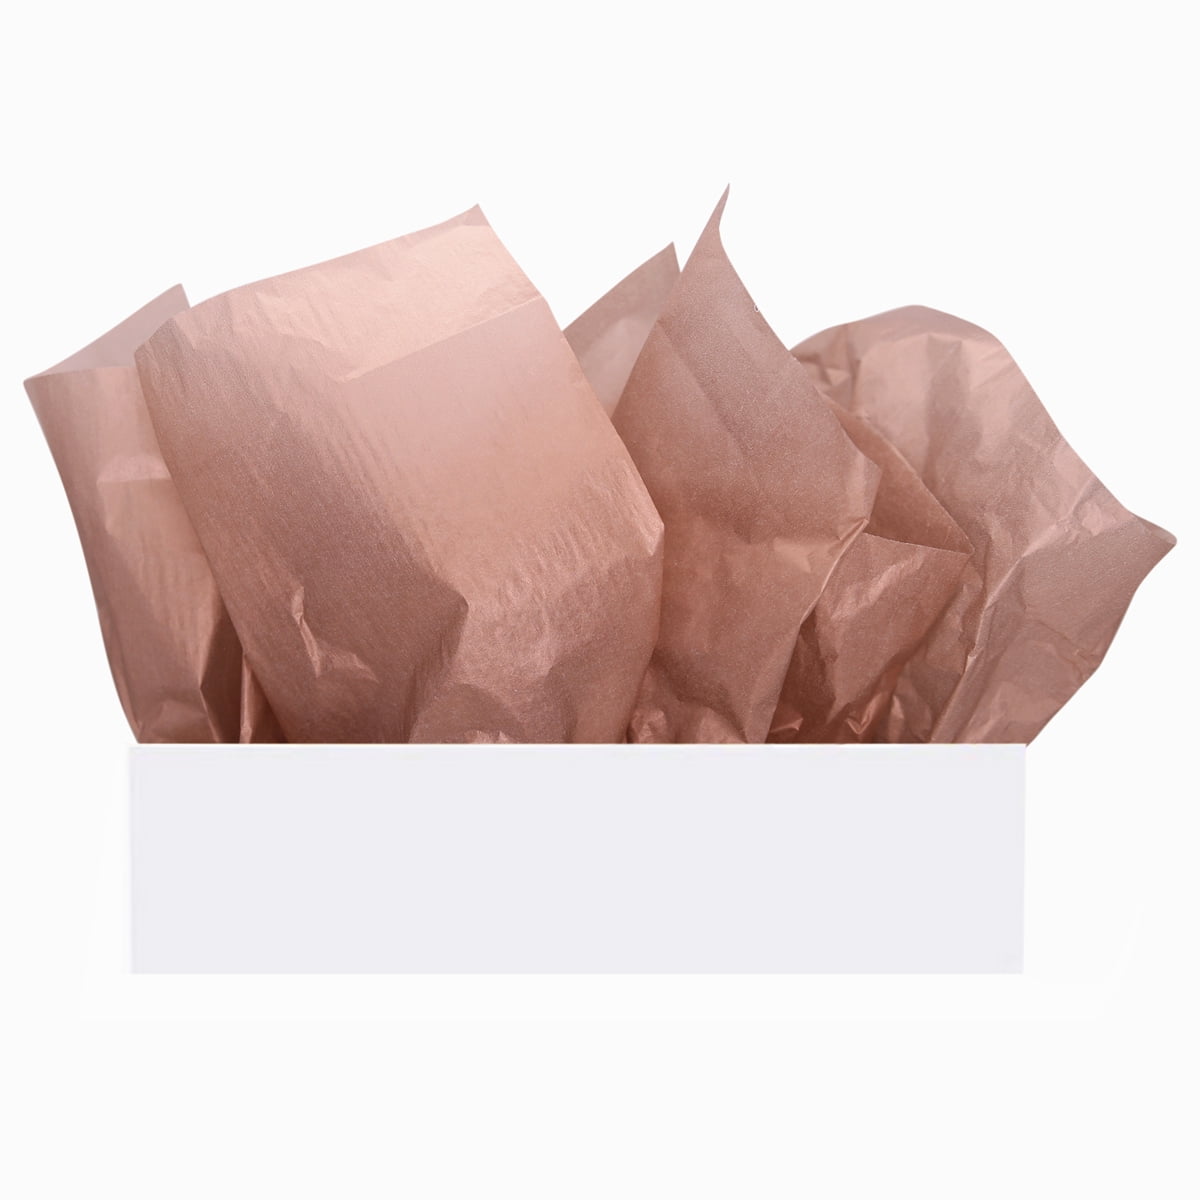 Tissue Paper Curlz Gift Bag Filler, 42-Inch - Gold/Black/Silver